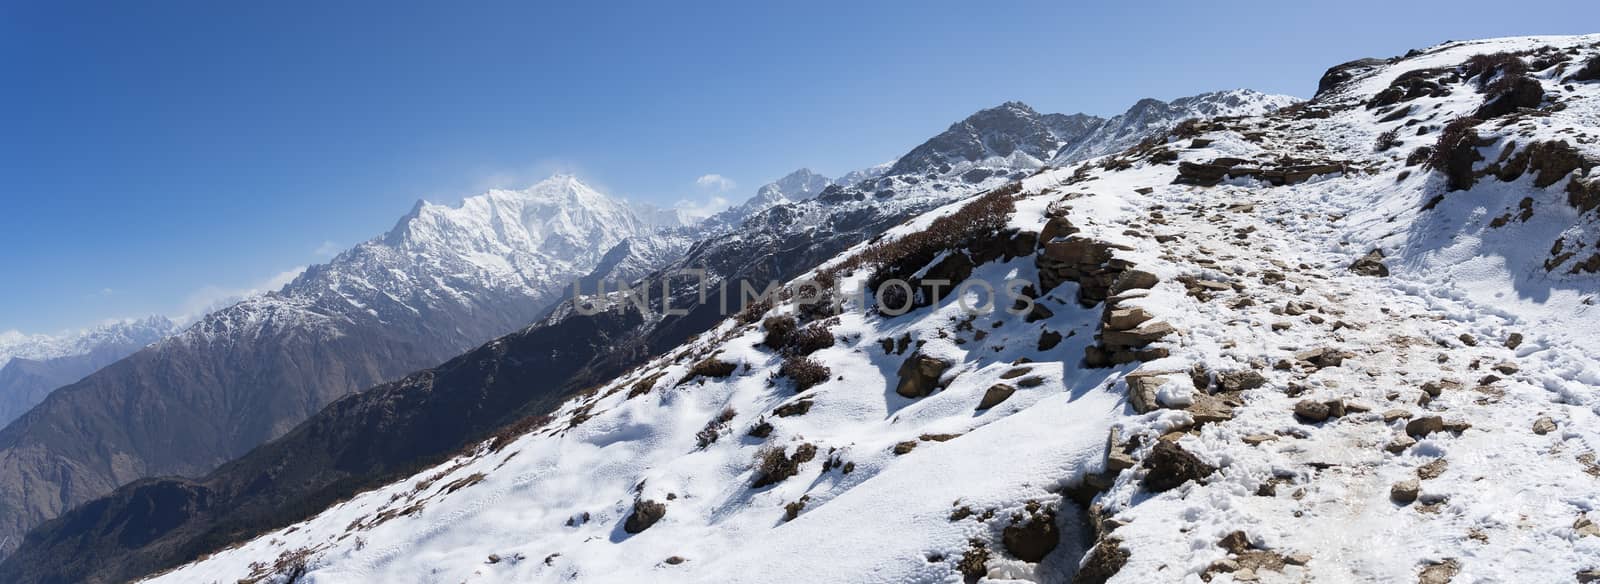 Trek in Nepal Gosaikunda and Nepal valley tourism